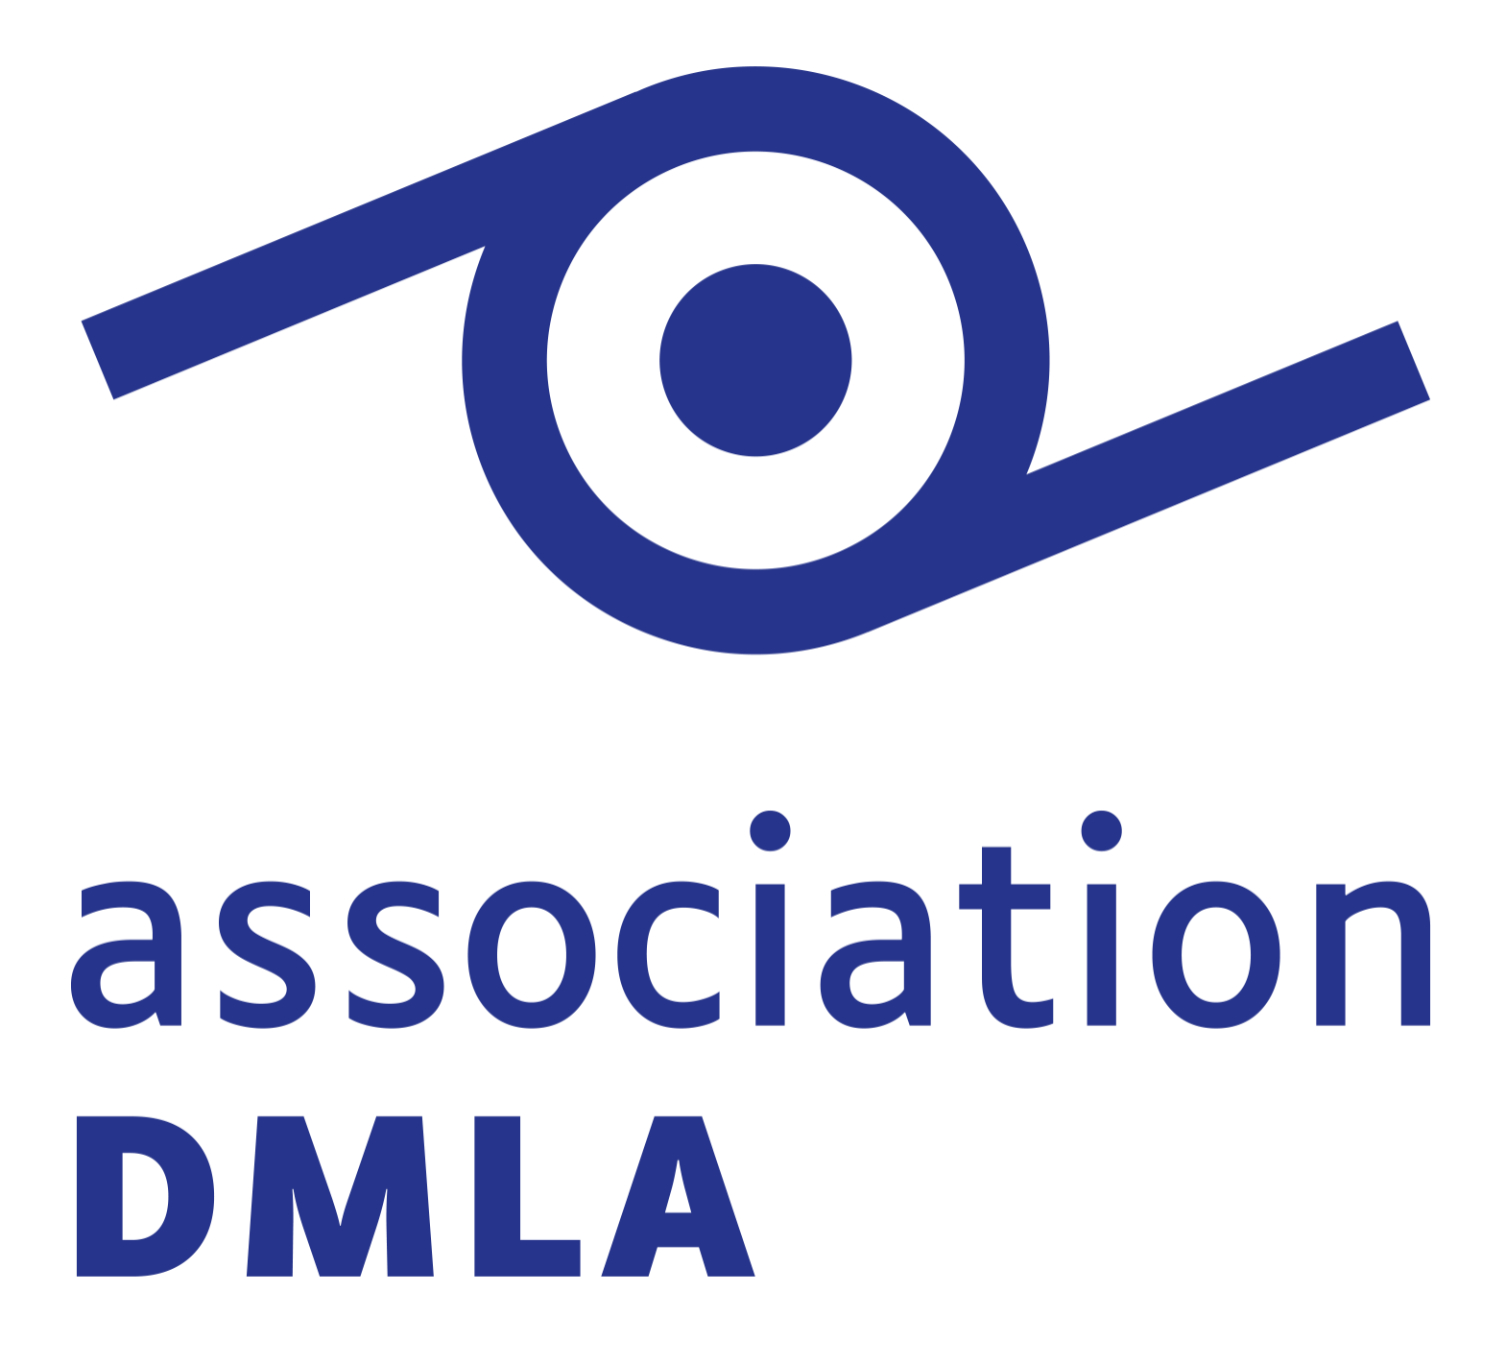 ASSOCIATION DMLA